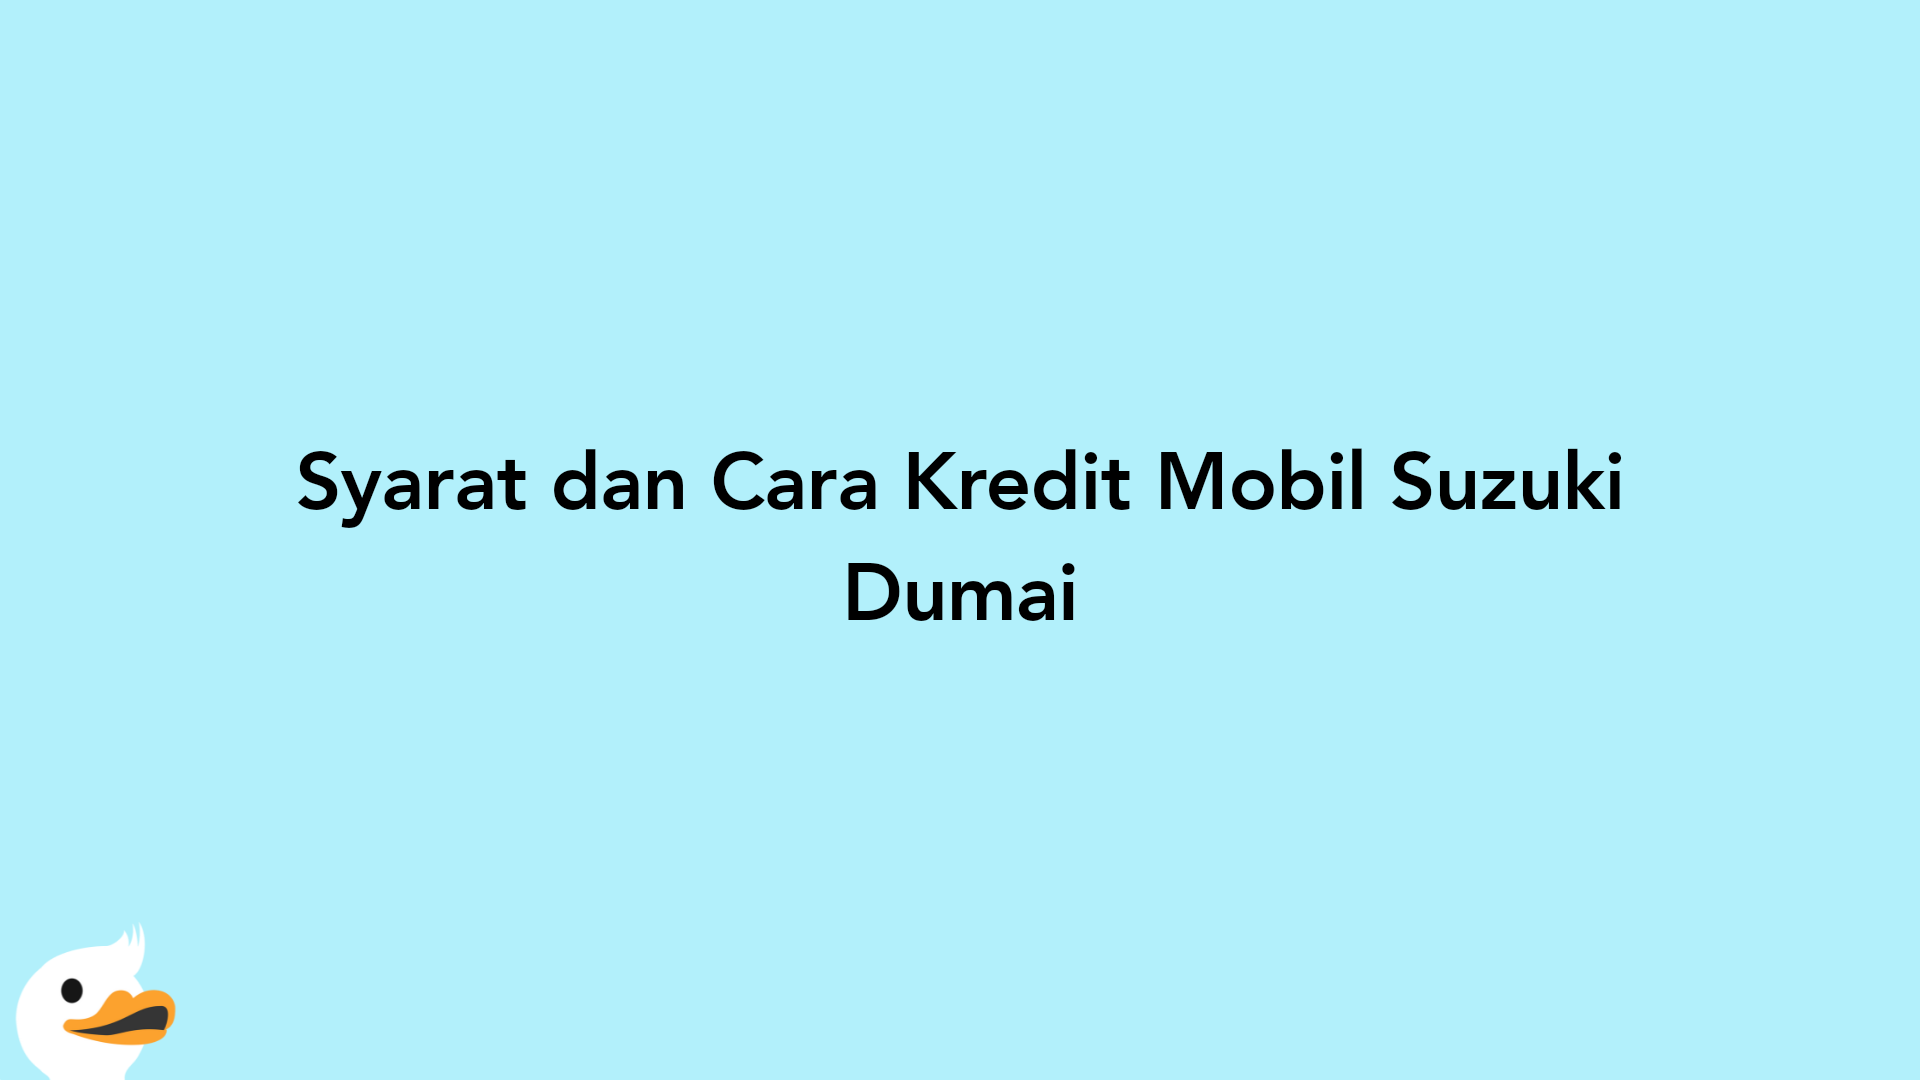 Syarat dan Cara Kredit Mobil Suzuki Dumai